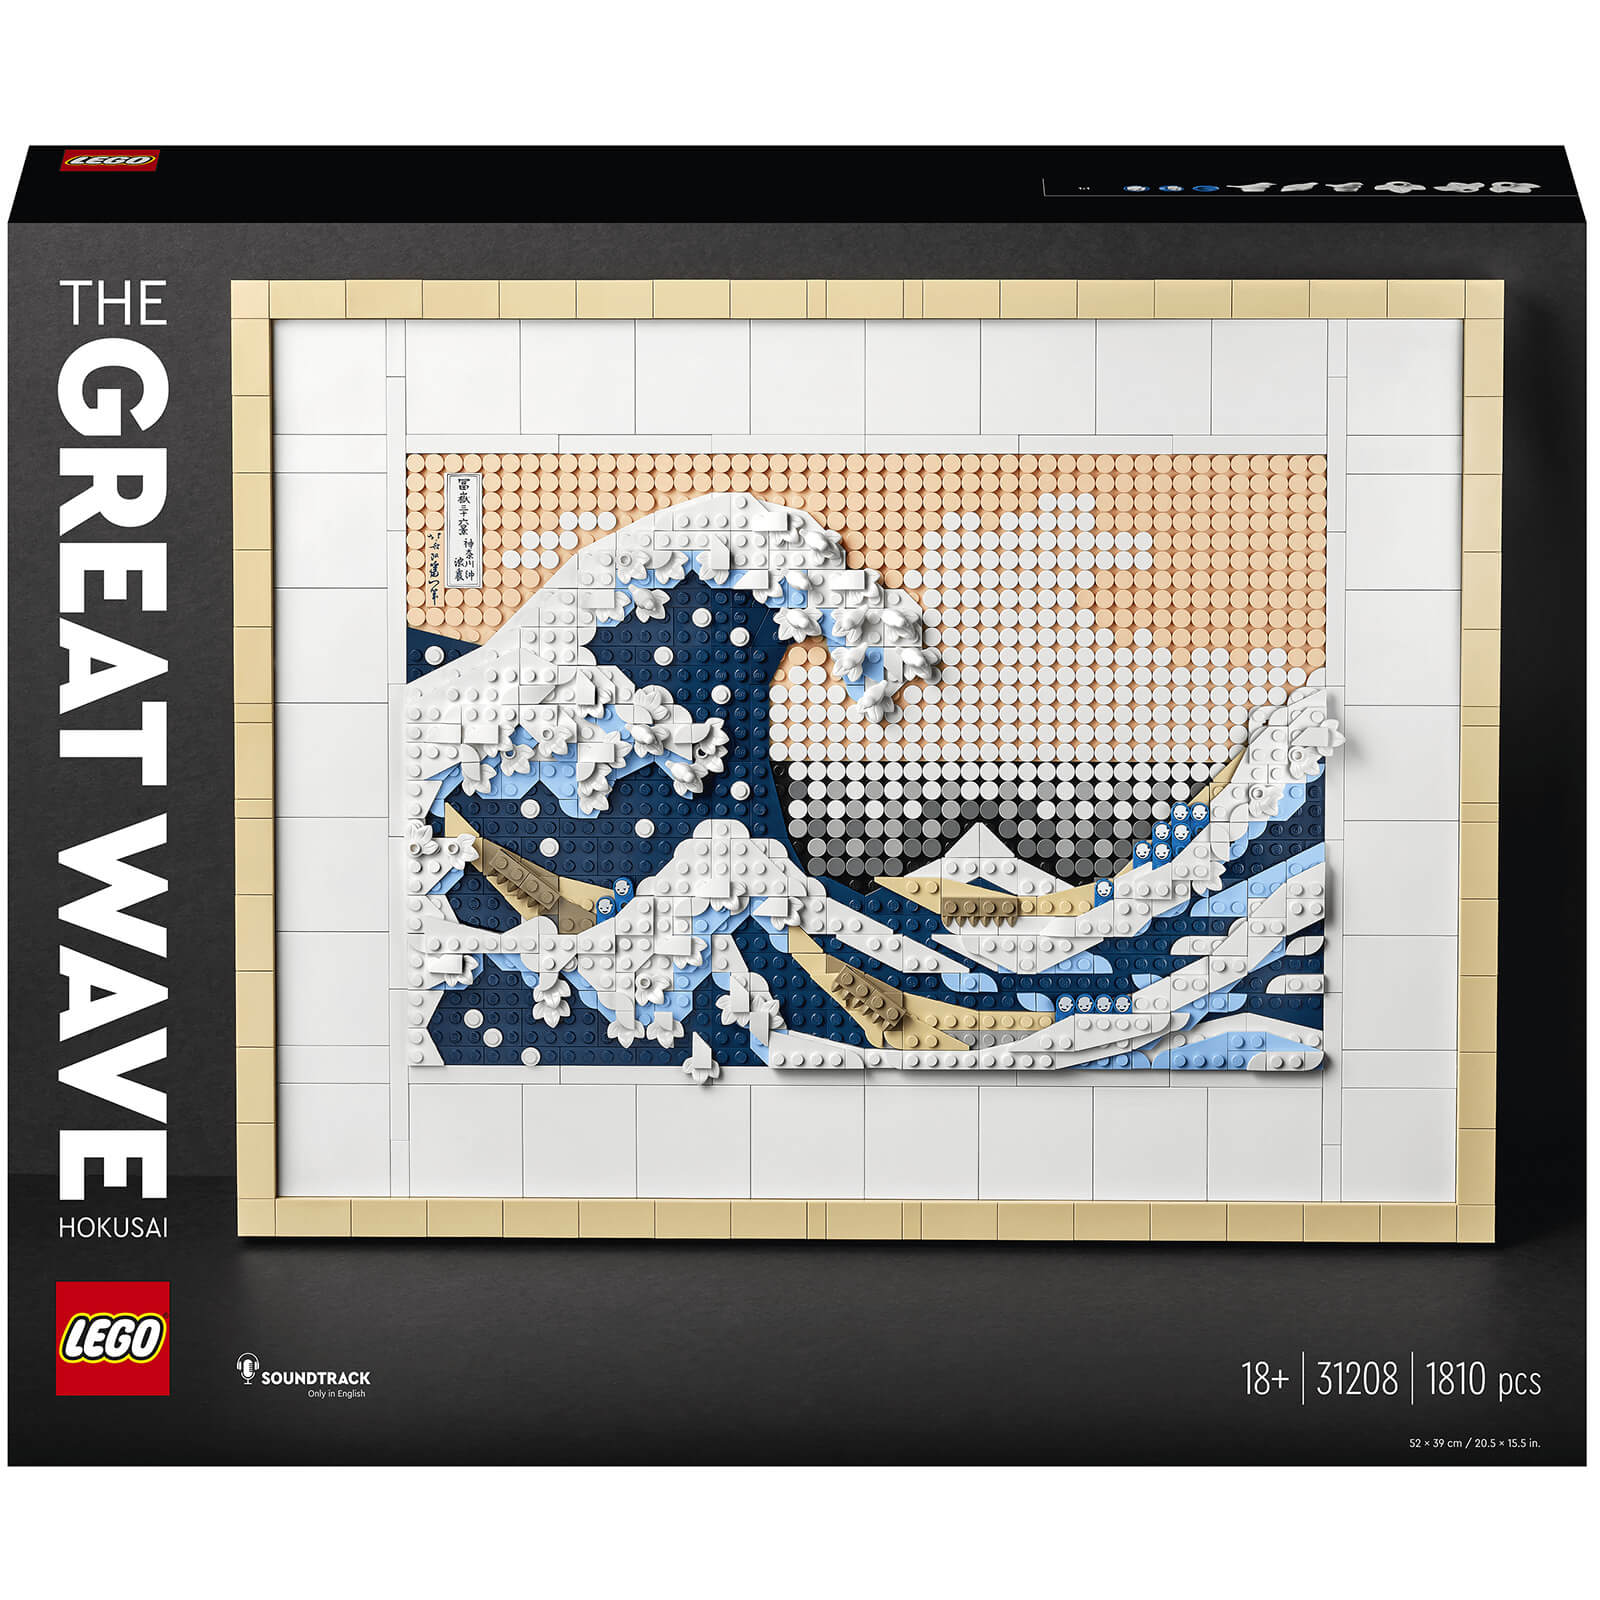 LEGO ART Hokusai - The Great Wave Wall Art Adults Set (31208)